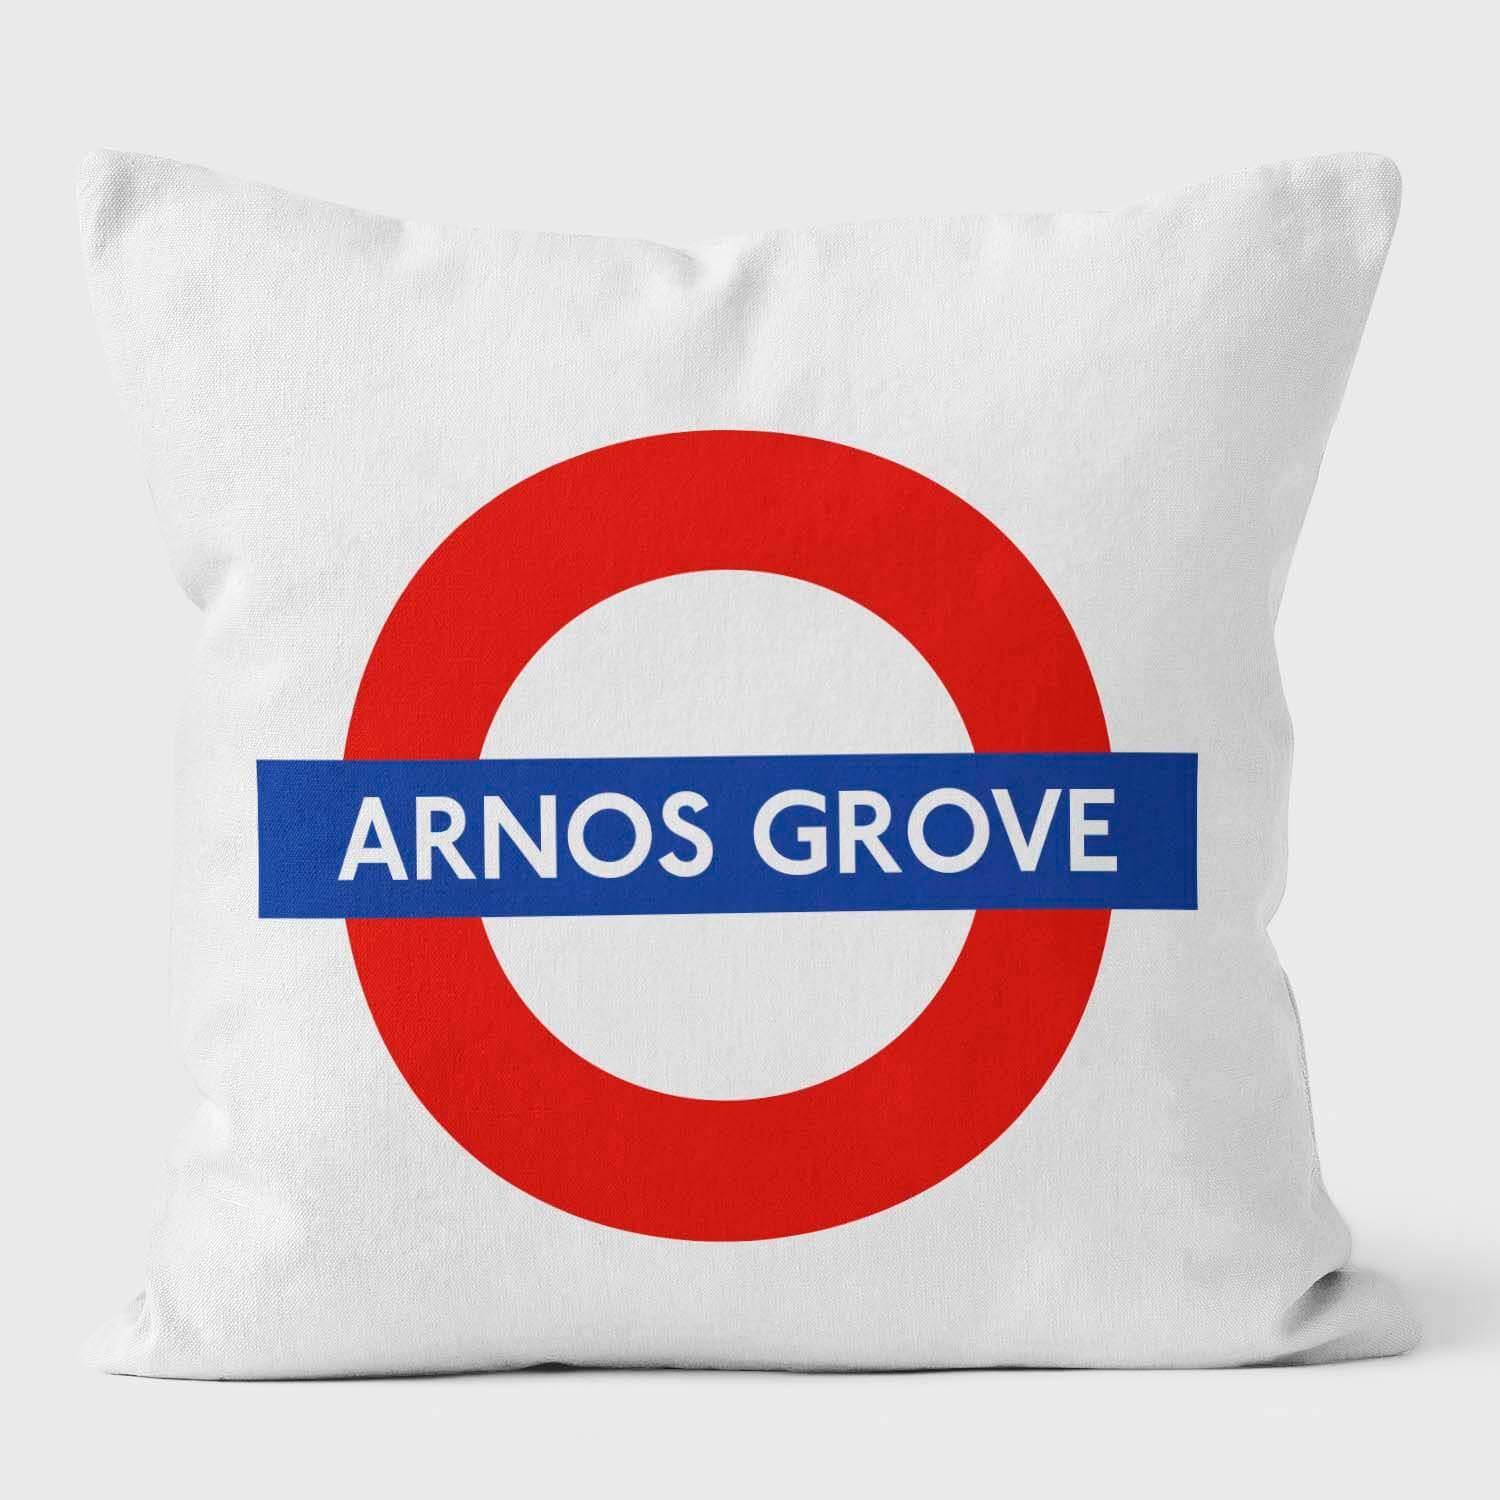 Arnos Grove London Underground Tube Station Roundel Cushion - Handmade Cushions UK - WeLoveCushions